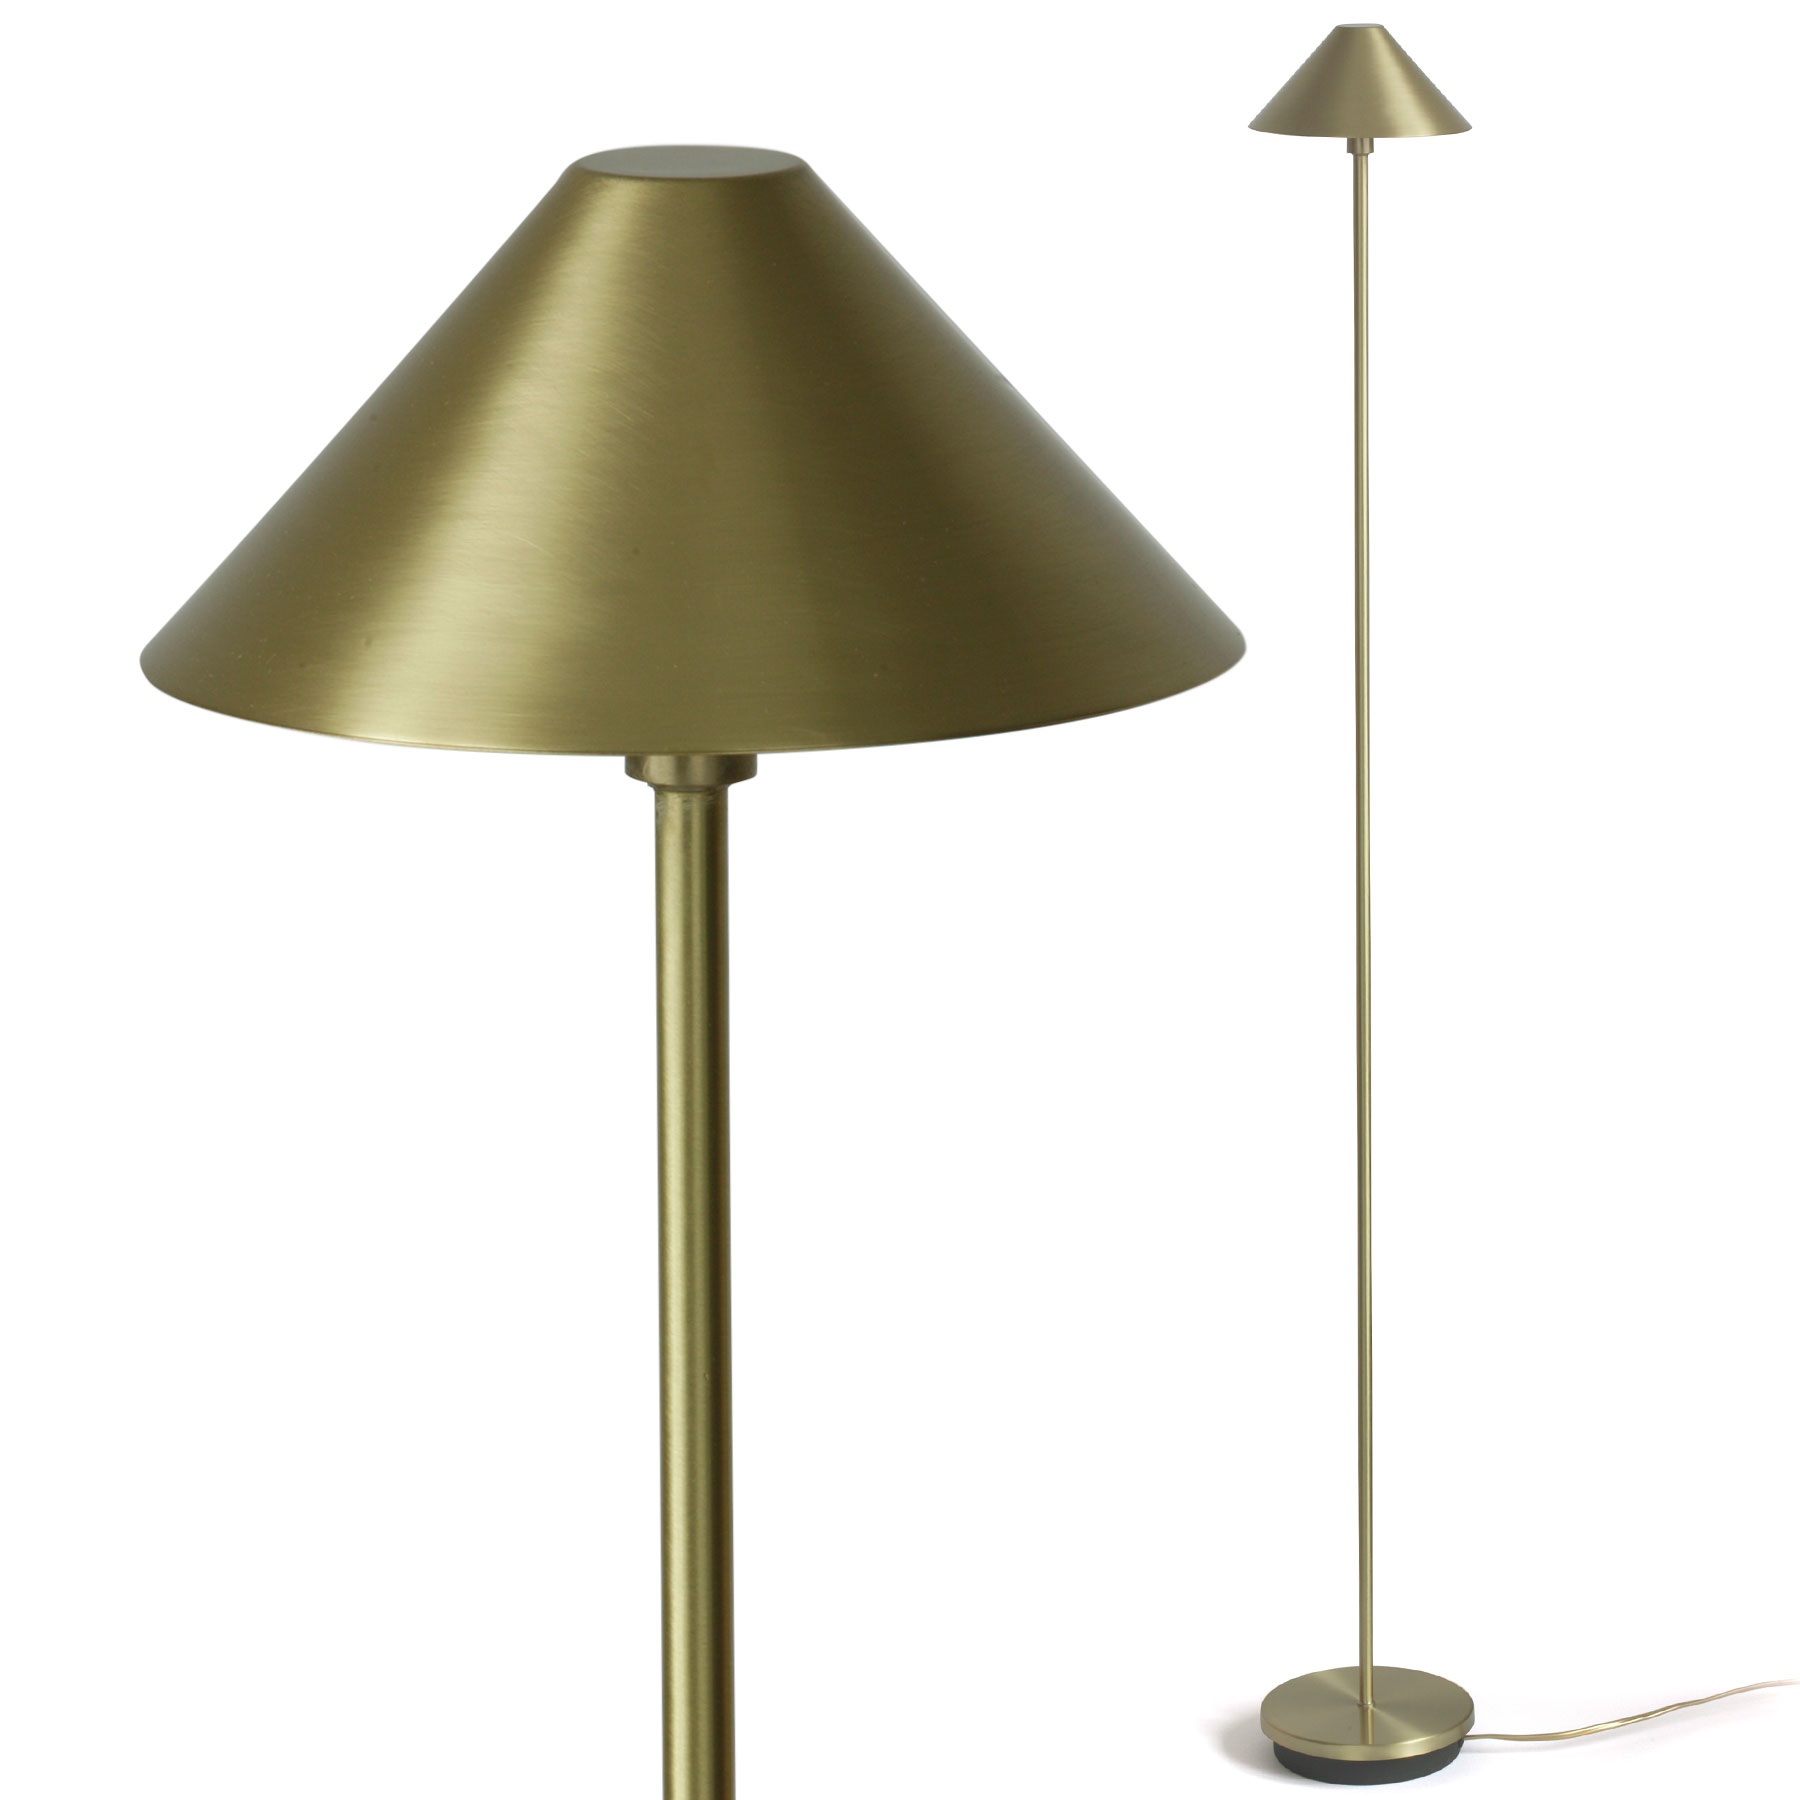 Schlanke Schirm-Stehlampe aus Messing: Elegante schlanke Stehlampe aus Messing, 120 cm mit Schirm (hier in 13 Messing satiniert)